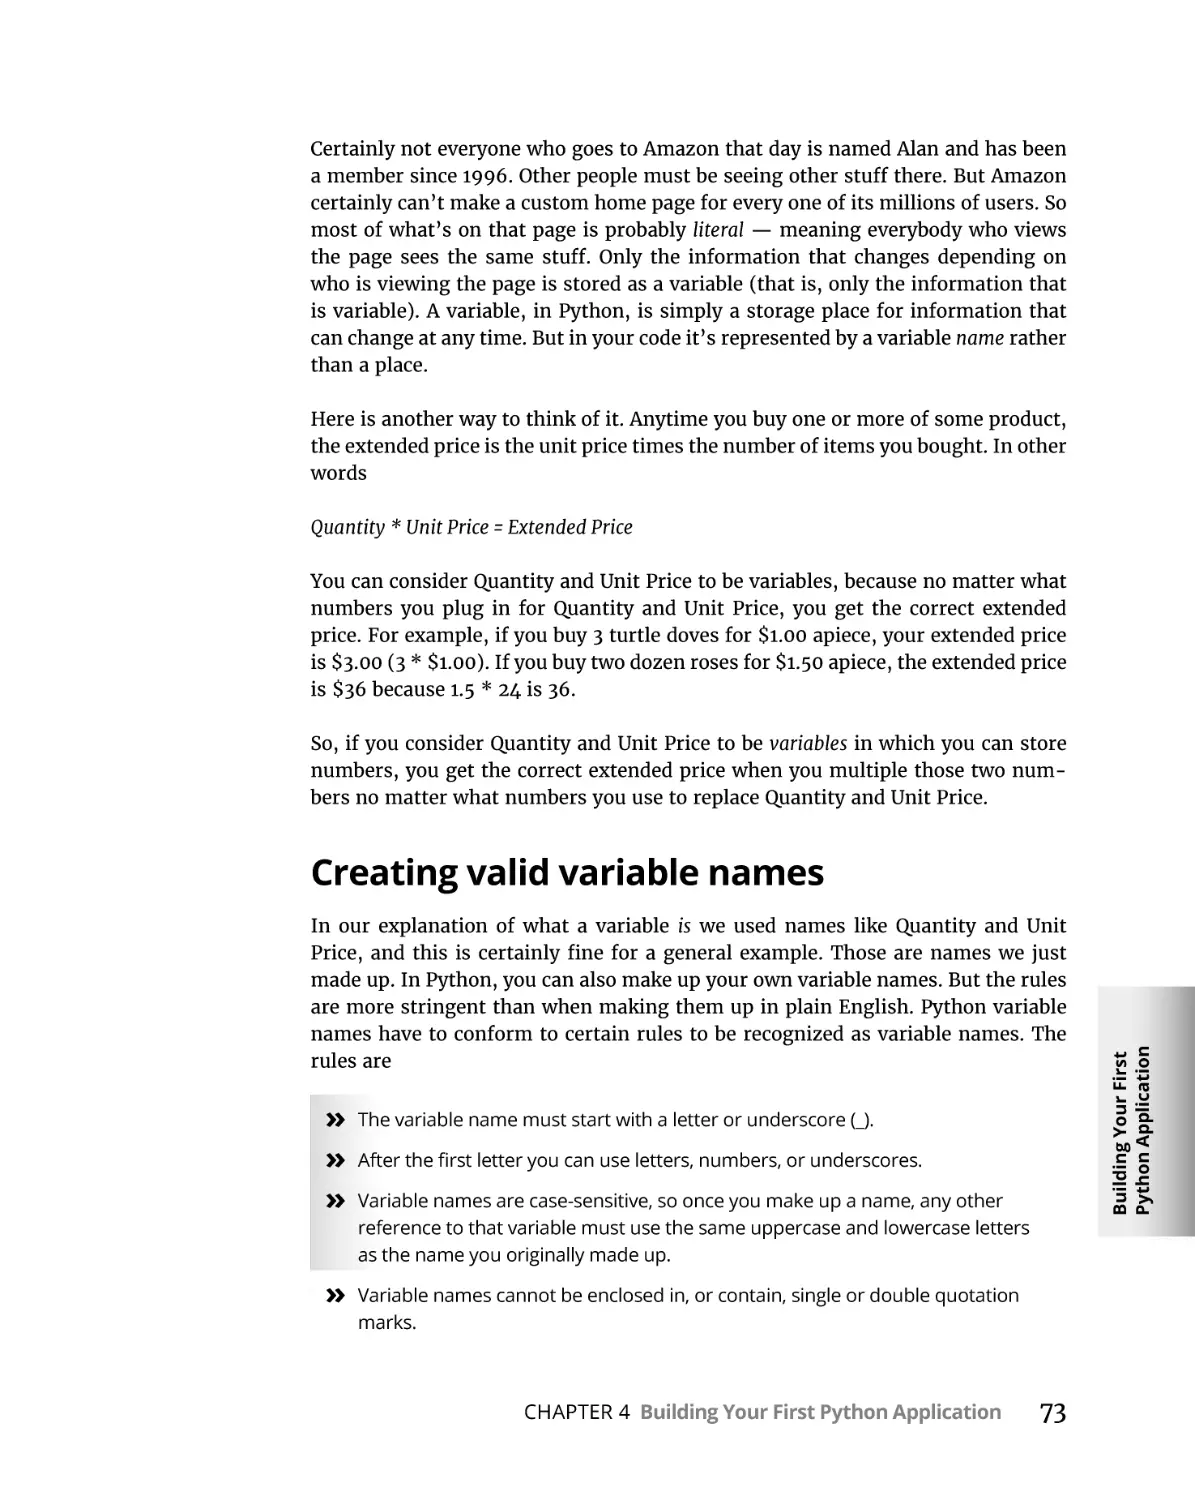 Creating valid variable names